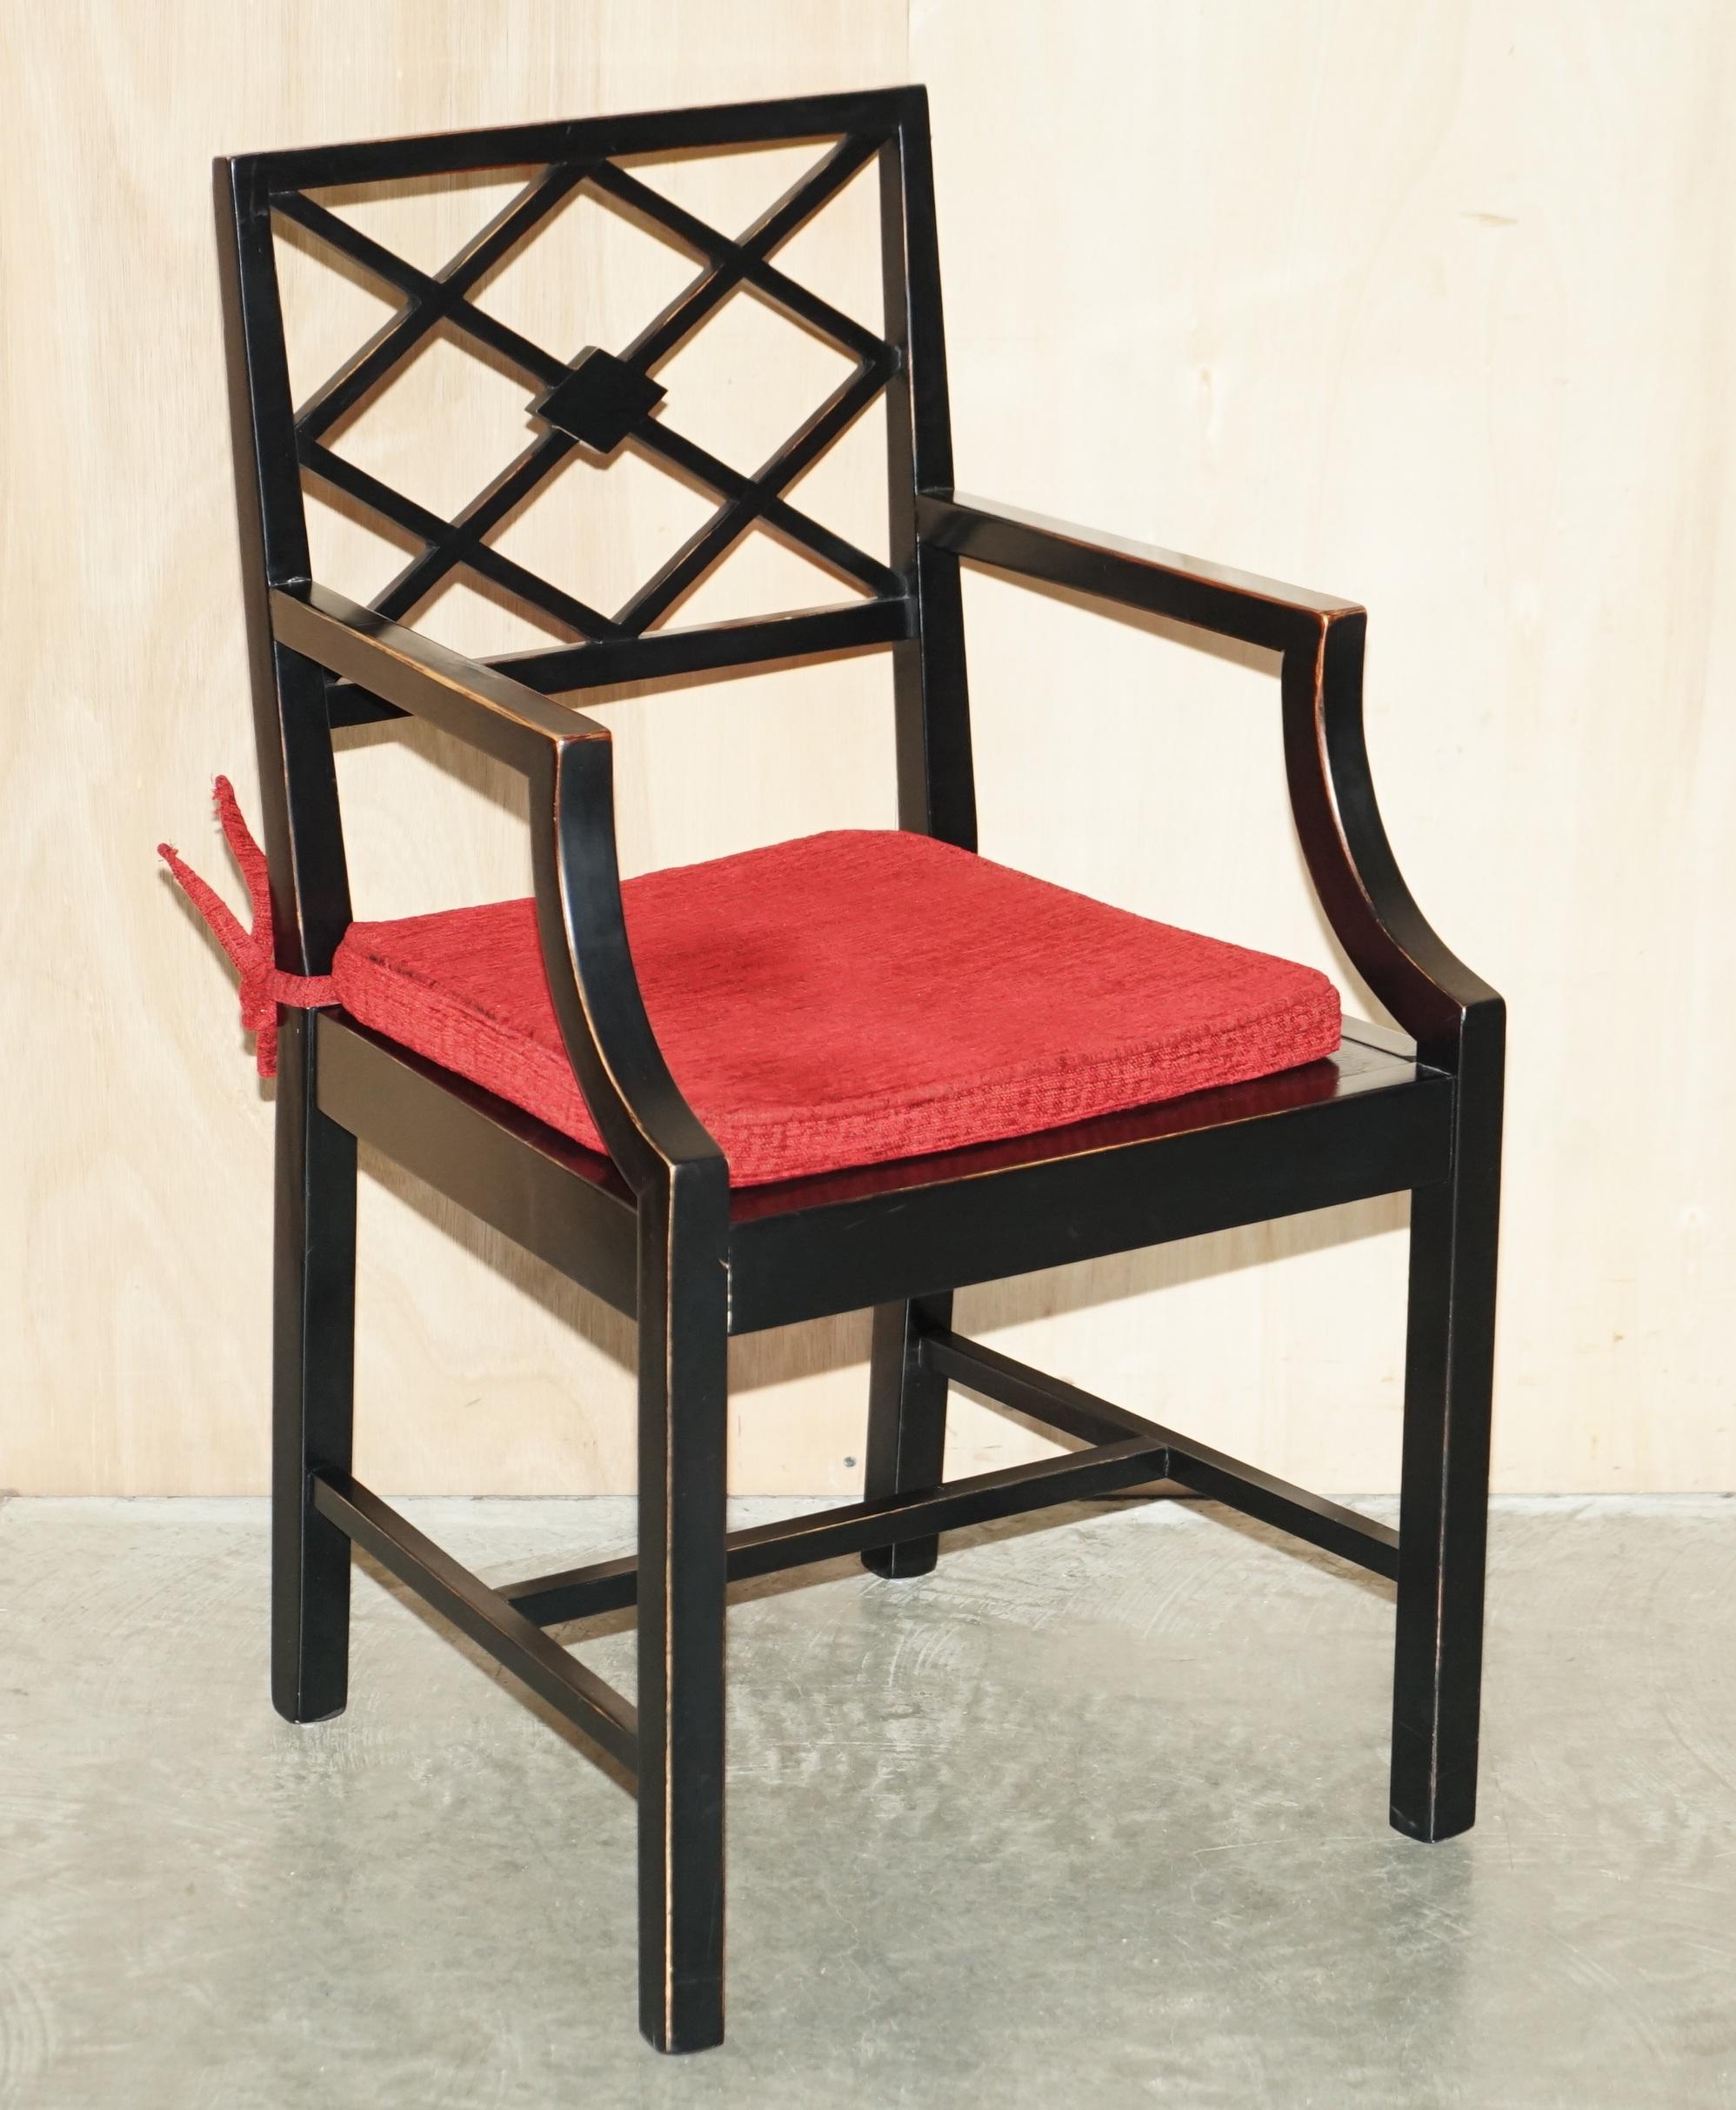 Wir freuen uns, dieses schöne Paar ebonisierter Beistellstühle im Stil von Thomas Chippendale zum Verkauf anbieten zu können

Ein sehr gut aussehendes und gut gemachtes Paar, das den Originalen von Chippendale nachempfunden ist, die für ein Paar